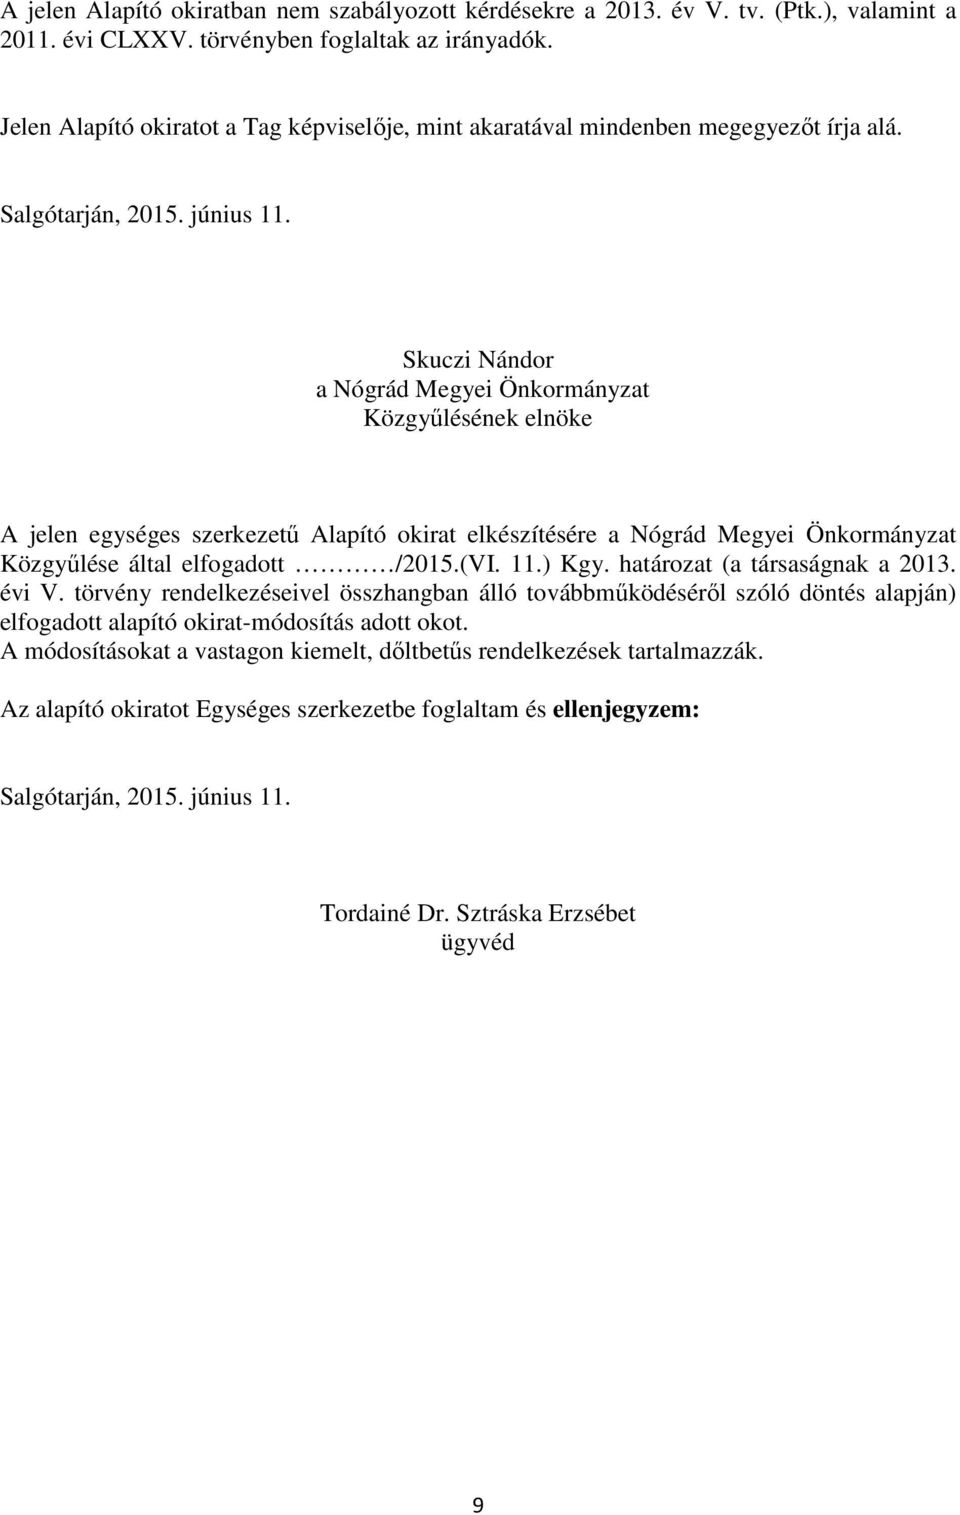 Skuczi Nándor a Nógrád Megyei Önkormányzat Közgyűlésének elnöke A jelen egységes szerkezetű Alapító okirat elkészítésére a Nógrád Megyei Önkormányzat Közgyűlése által elfogadott /2015.(VI. 11.) Kgy.